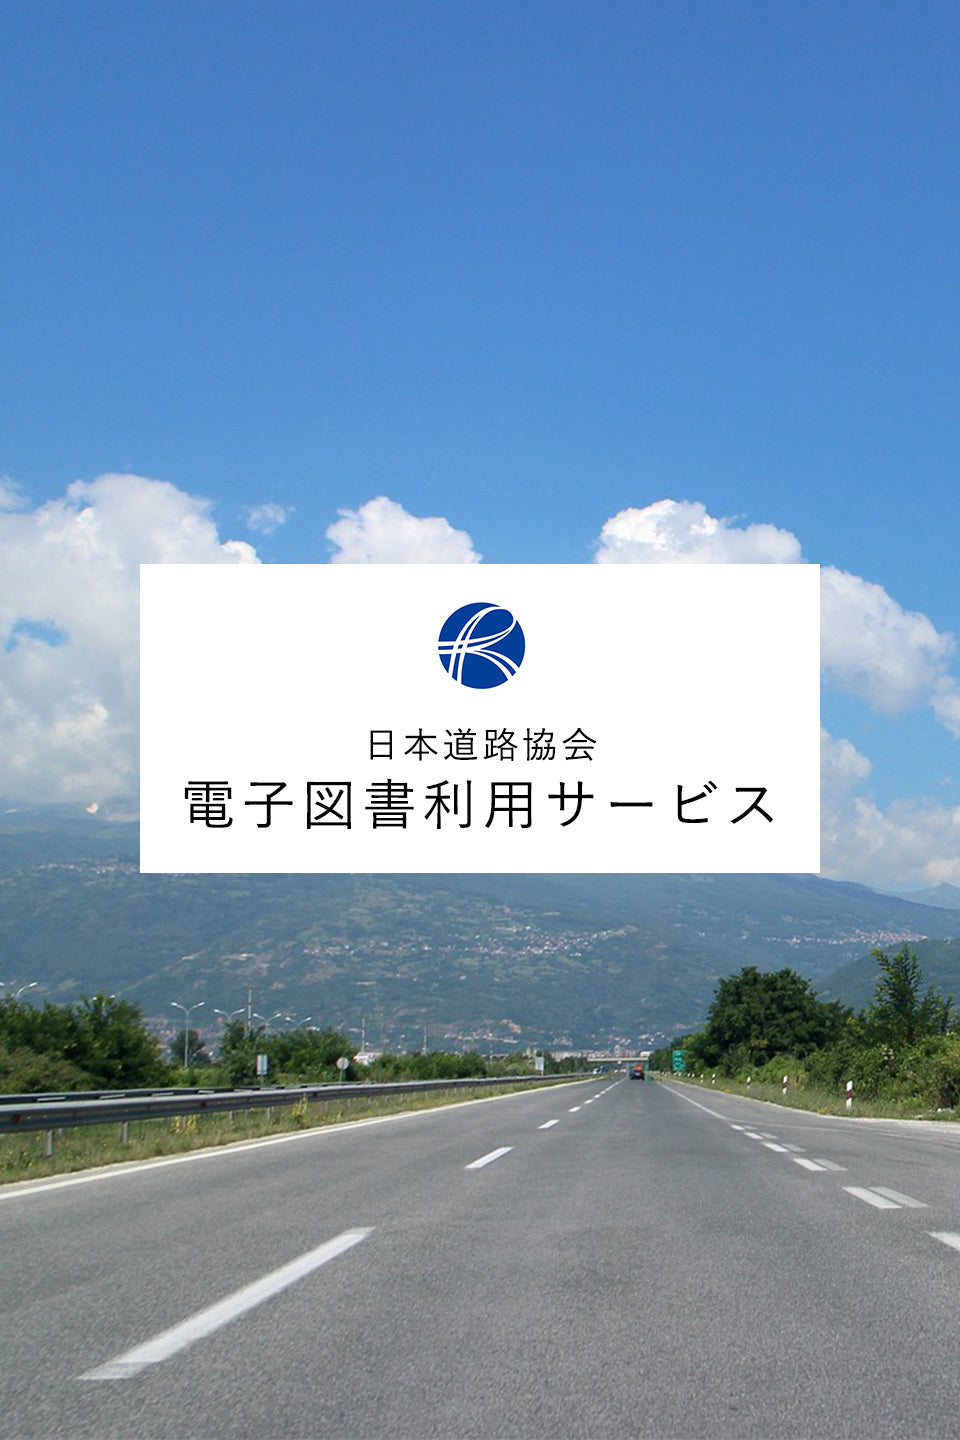 日本道路協会 電子図書利用サービス